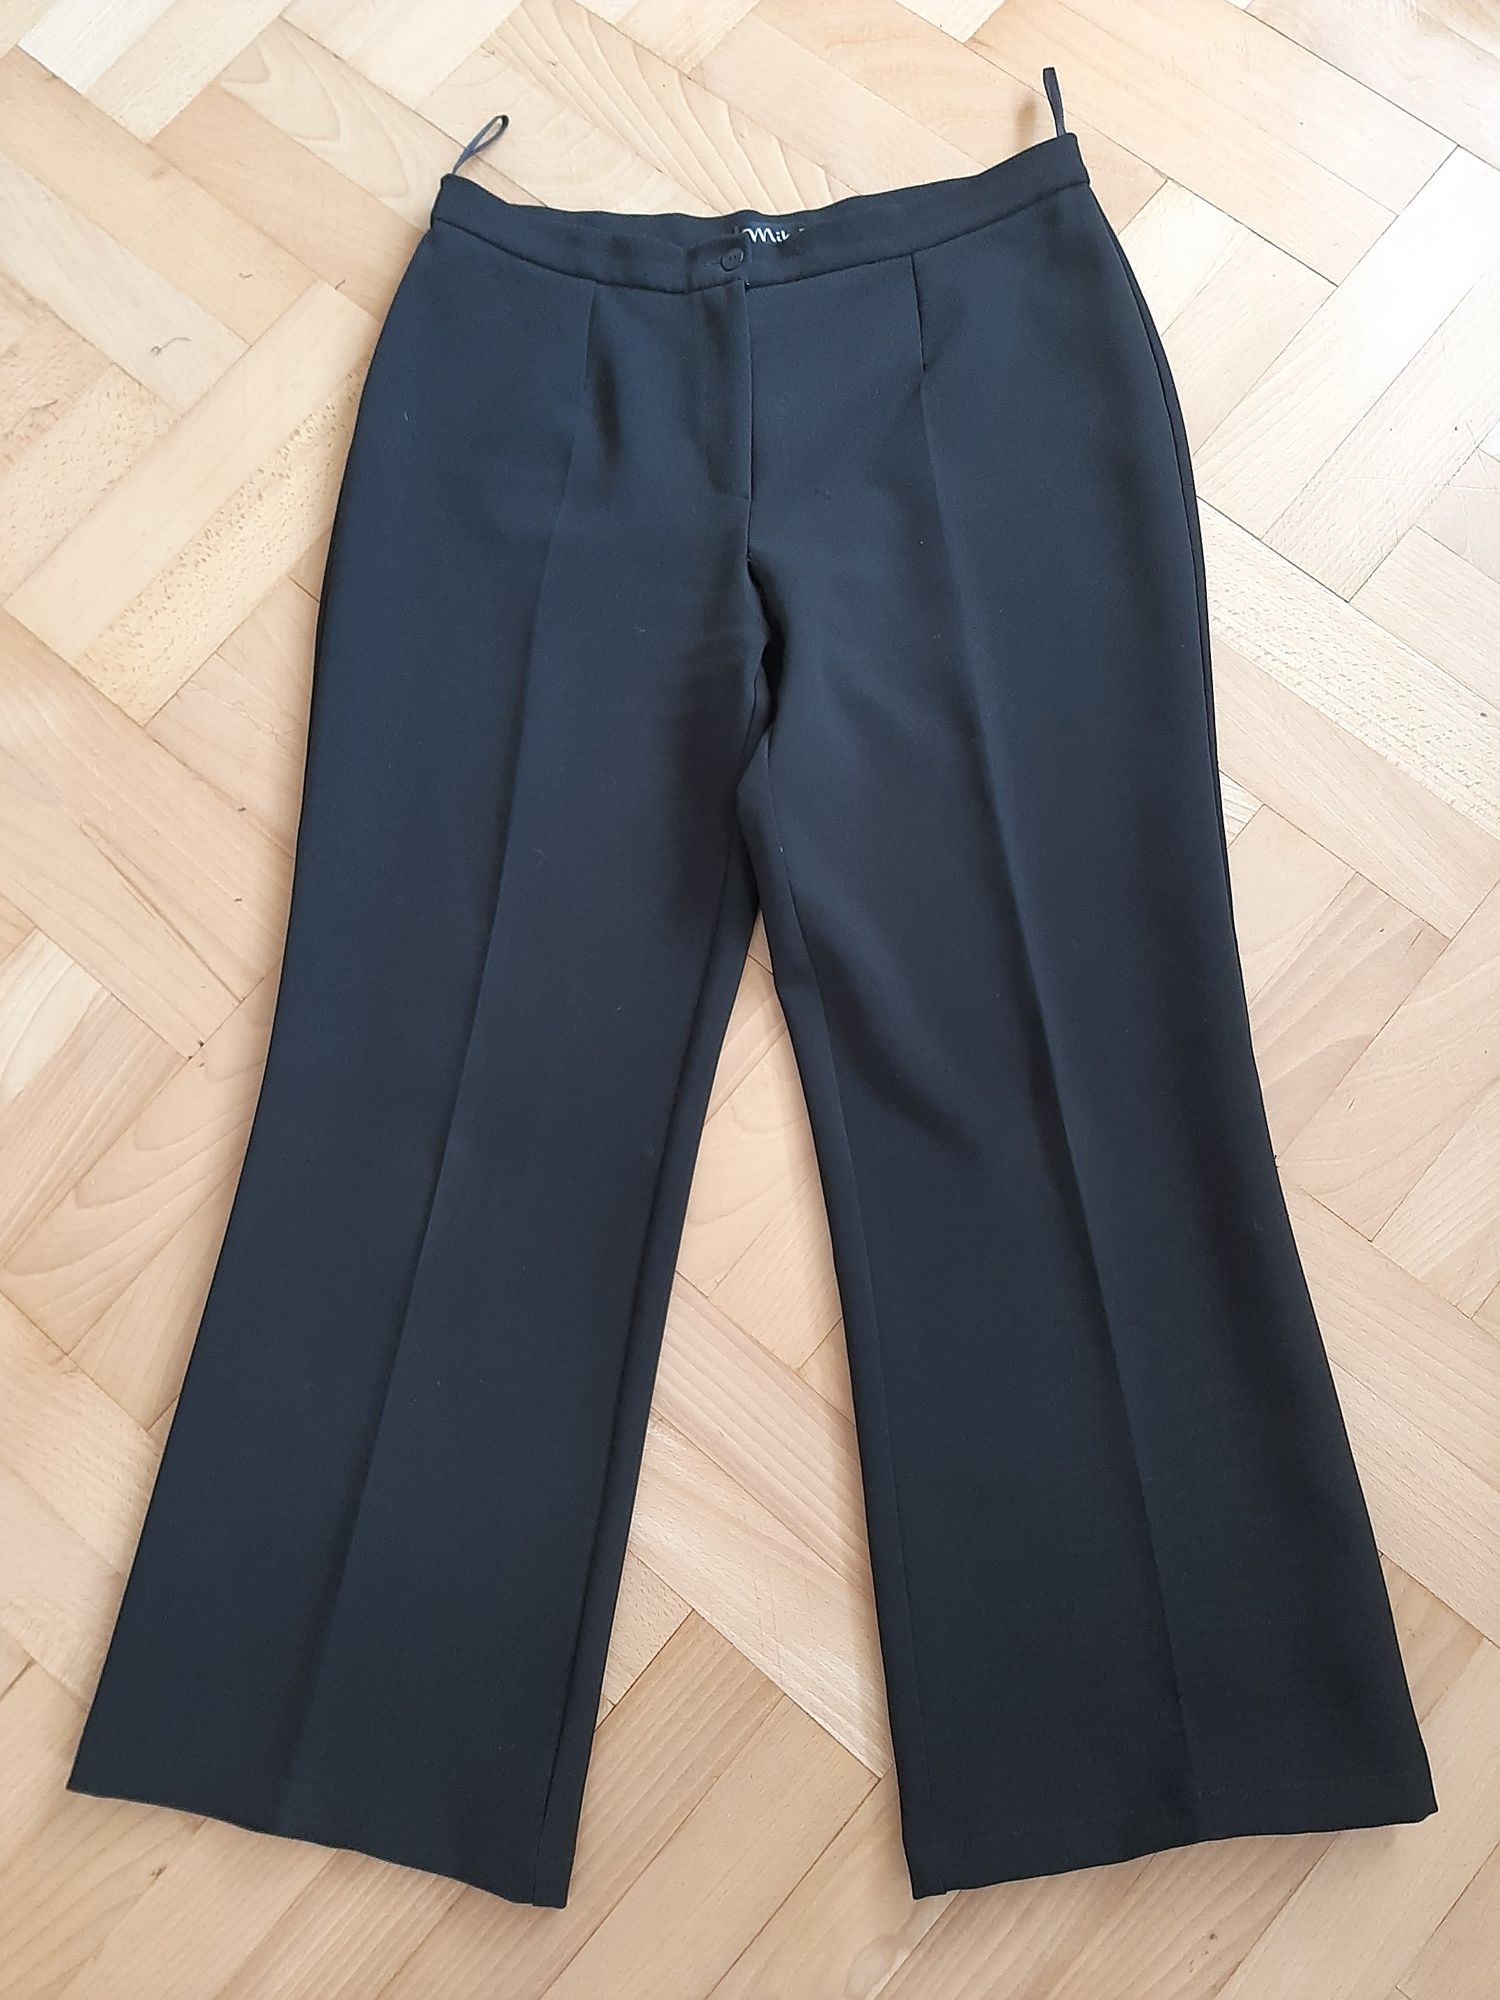 Spodnie 2/3XL eleganckie czarne na kant